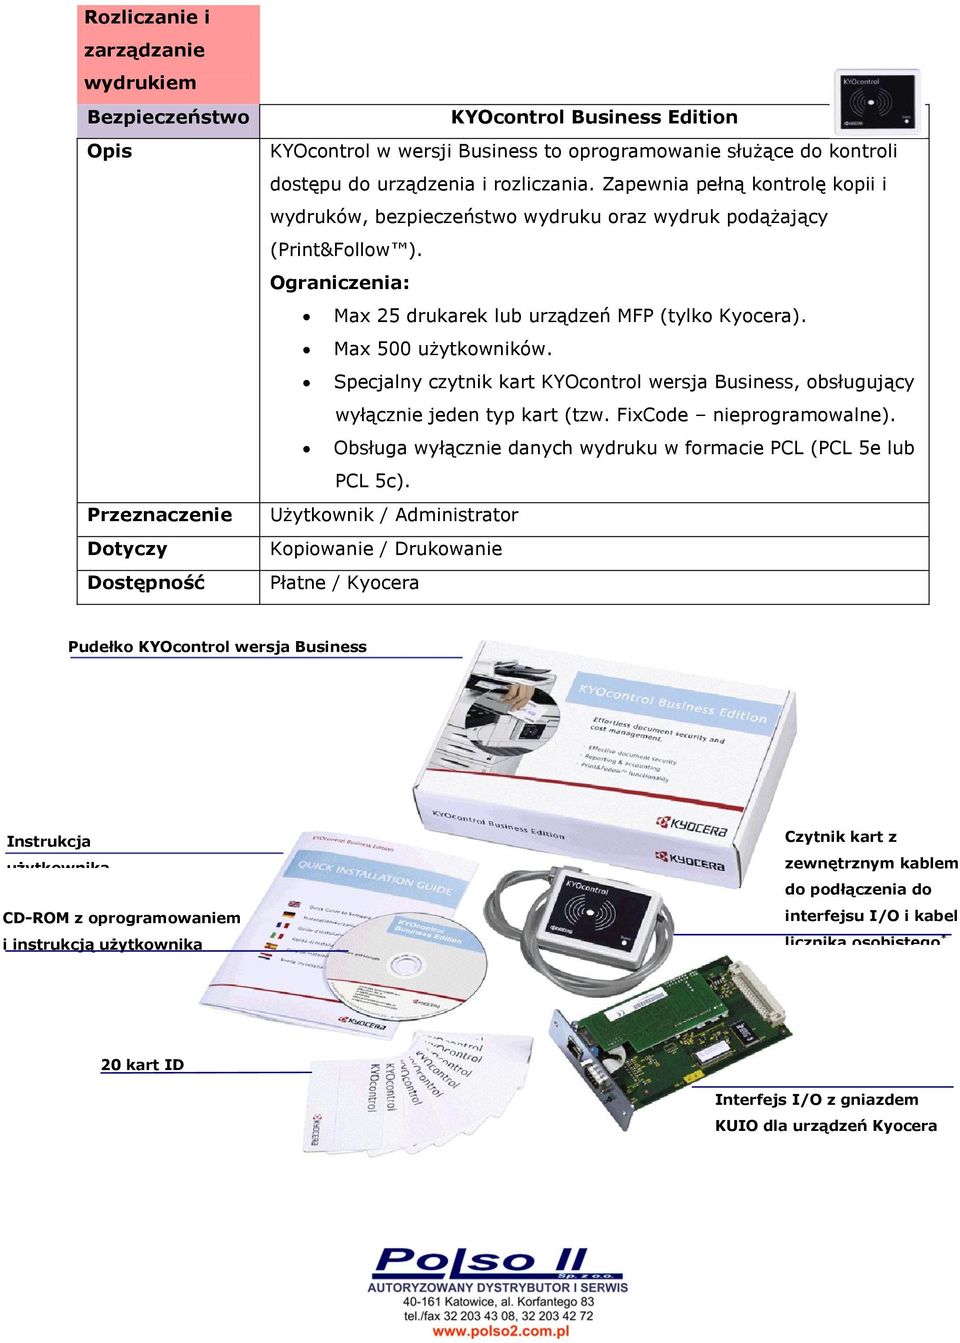 Specjalny czytnik kart KYOcontrol wersja Business, obsługujący wyłącznie jeden typ kart (tzw. FixCode nieprogramowalne). Obsługa wyłącznie danych wydruku w formacie PCL (PCL 5e lub PCL 5c).